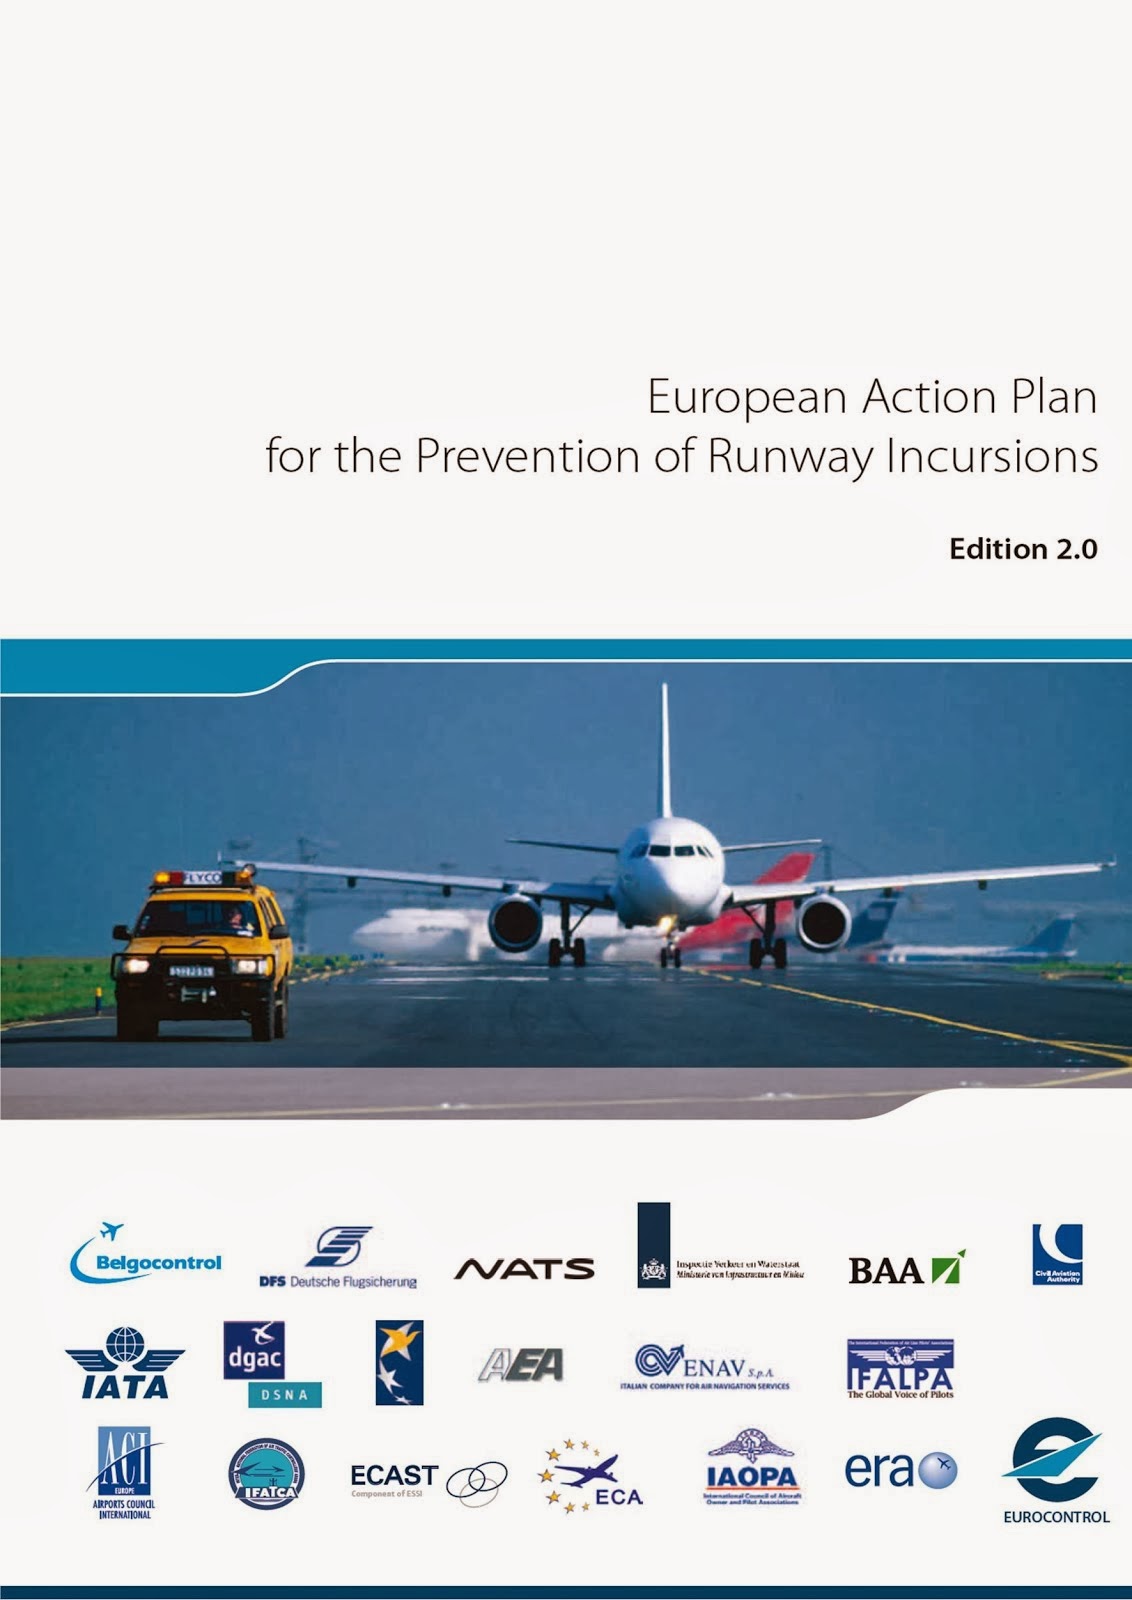 Plano Europeu para a Prevenção de Incursões em Pista (EUROCONTROL)